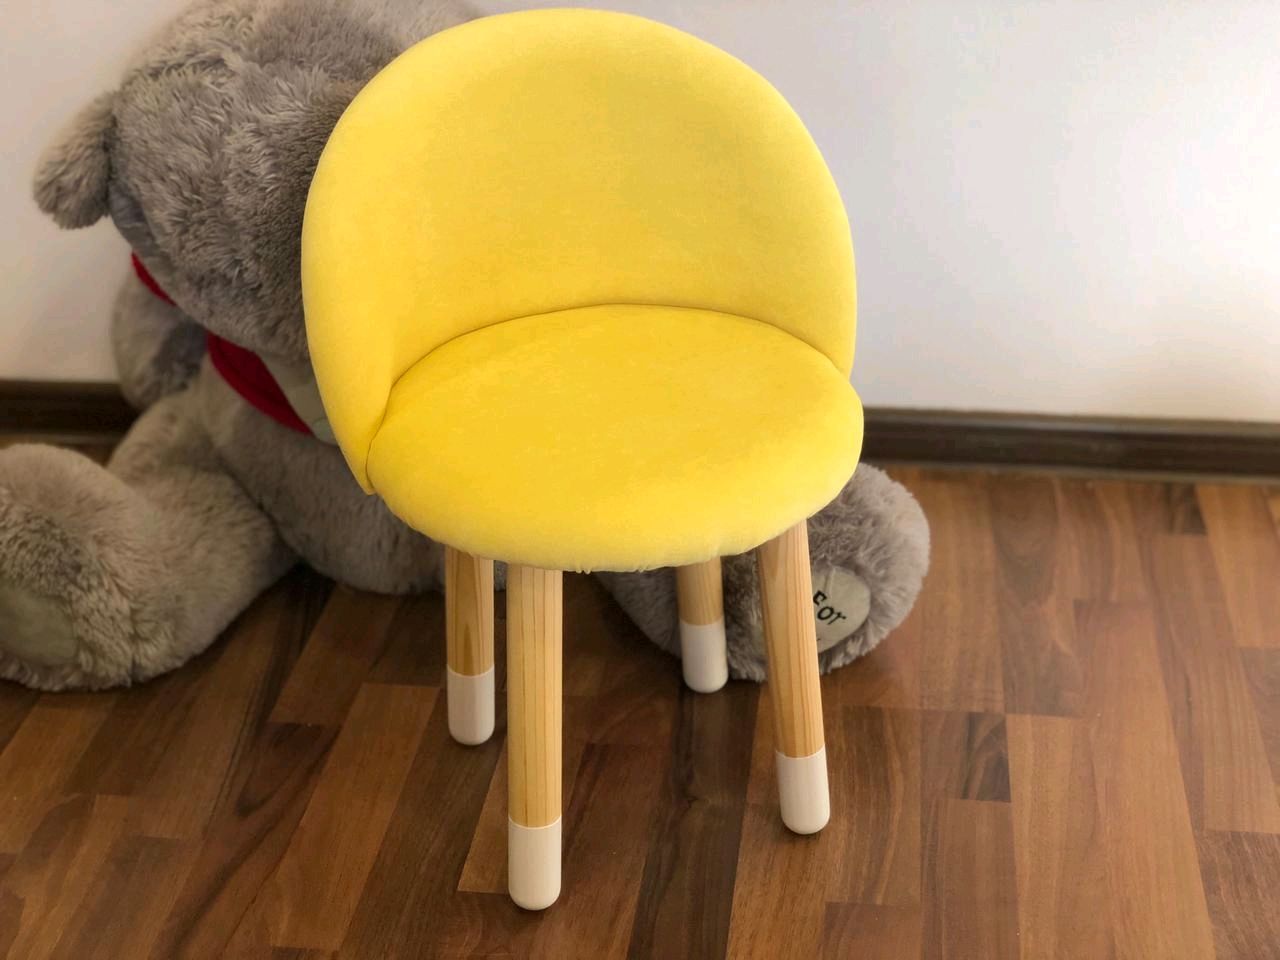 2 мягких стула. Детский мягкий стульчик. Мягкий стульчик под ноги. Желтый крутящийся стул. Детские мягкие стульчики купить.